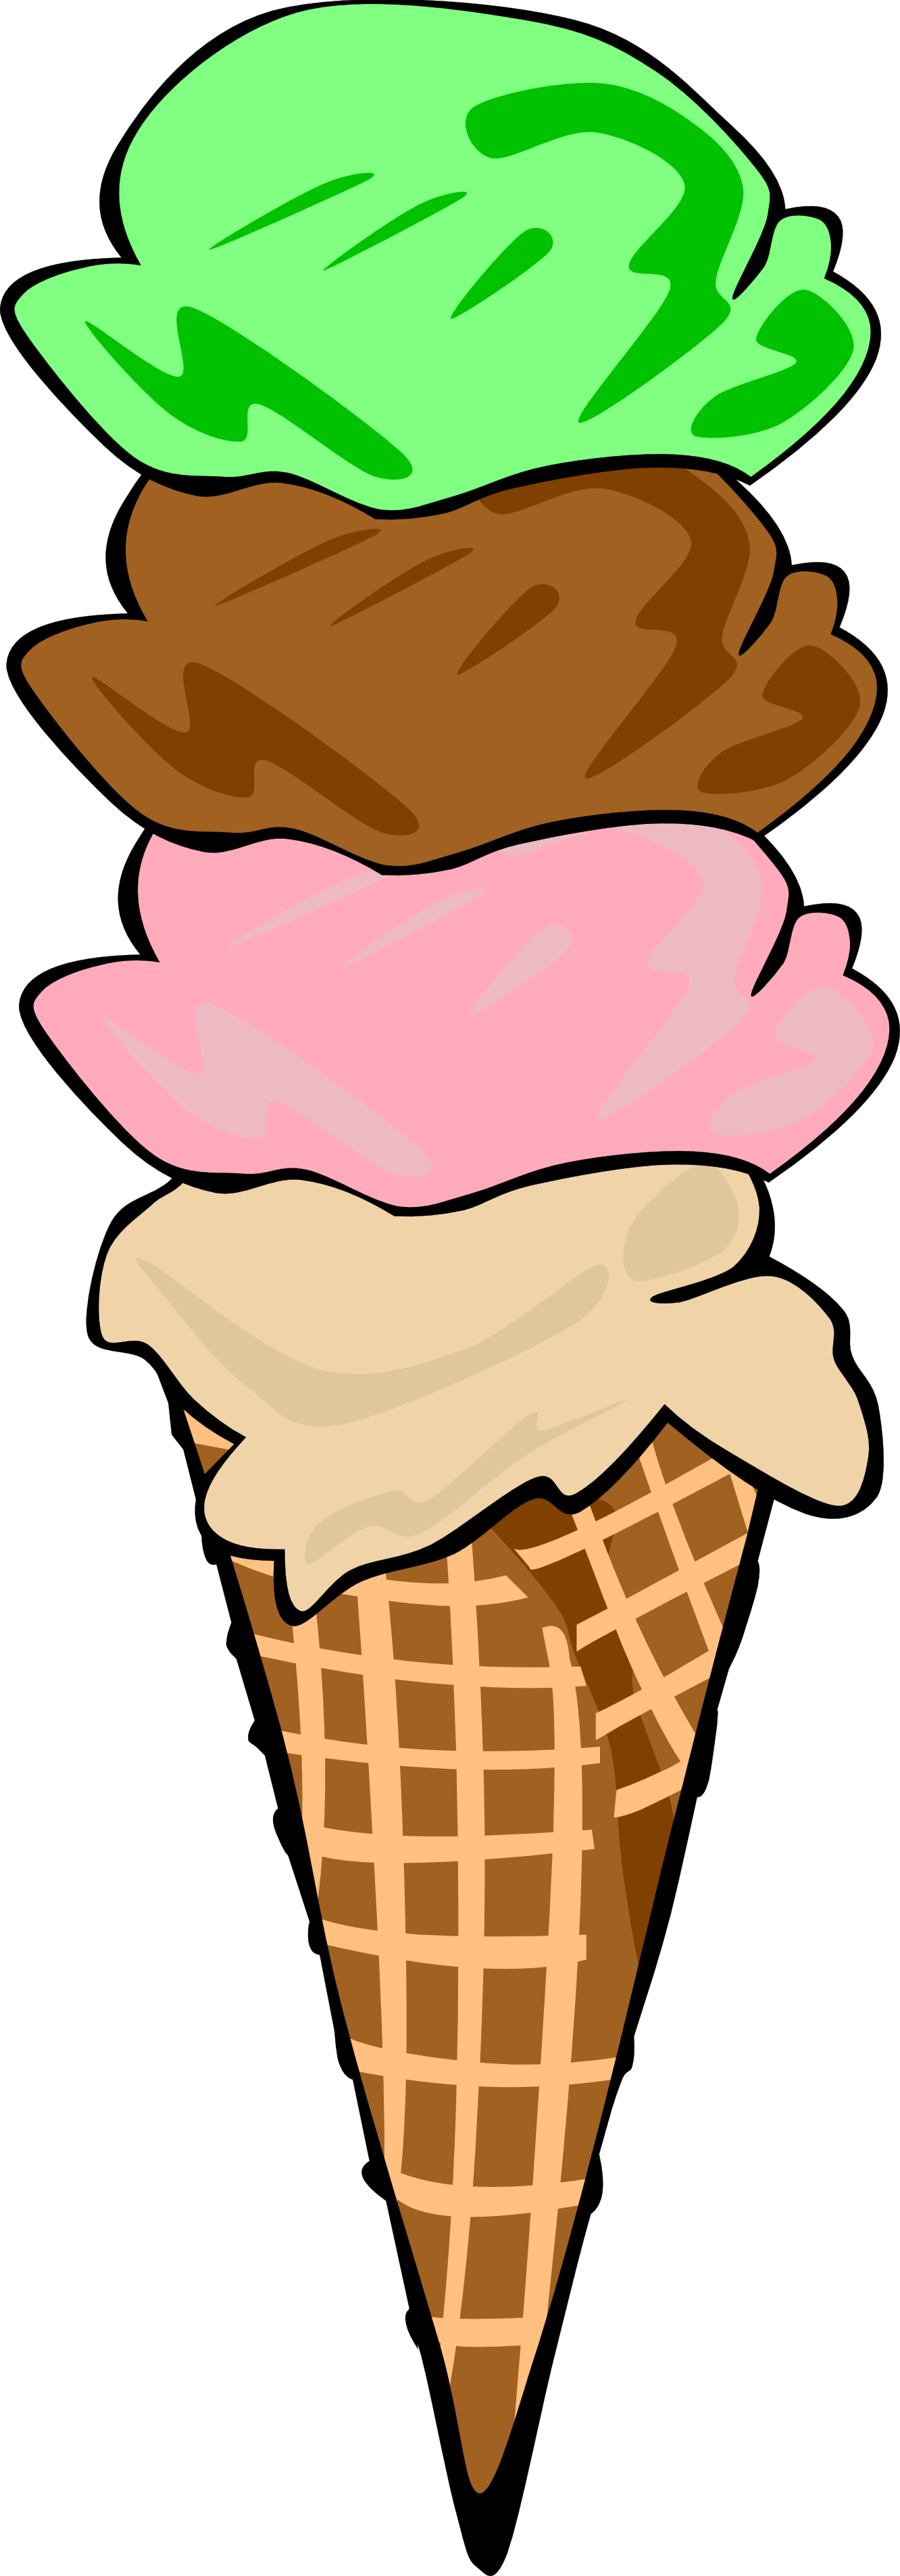 Pictures Of Ice Cream - Ice Cream Clip Art